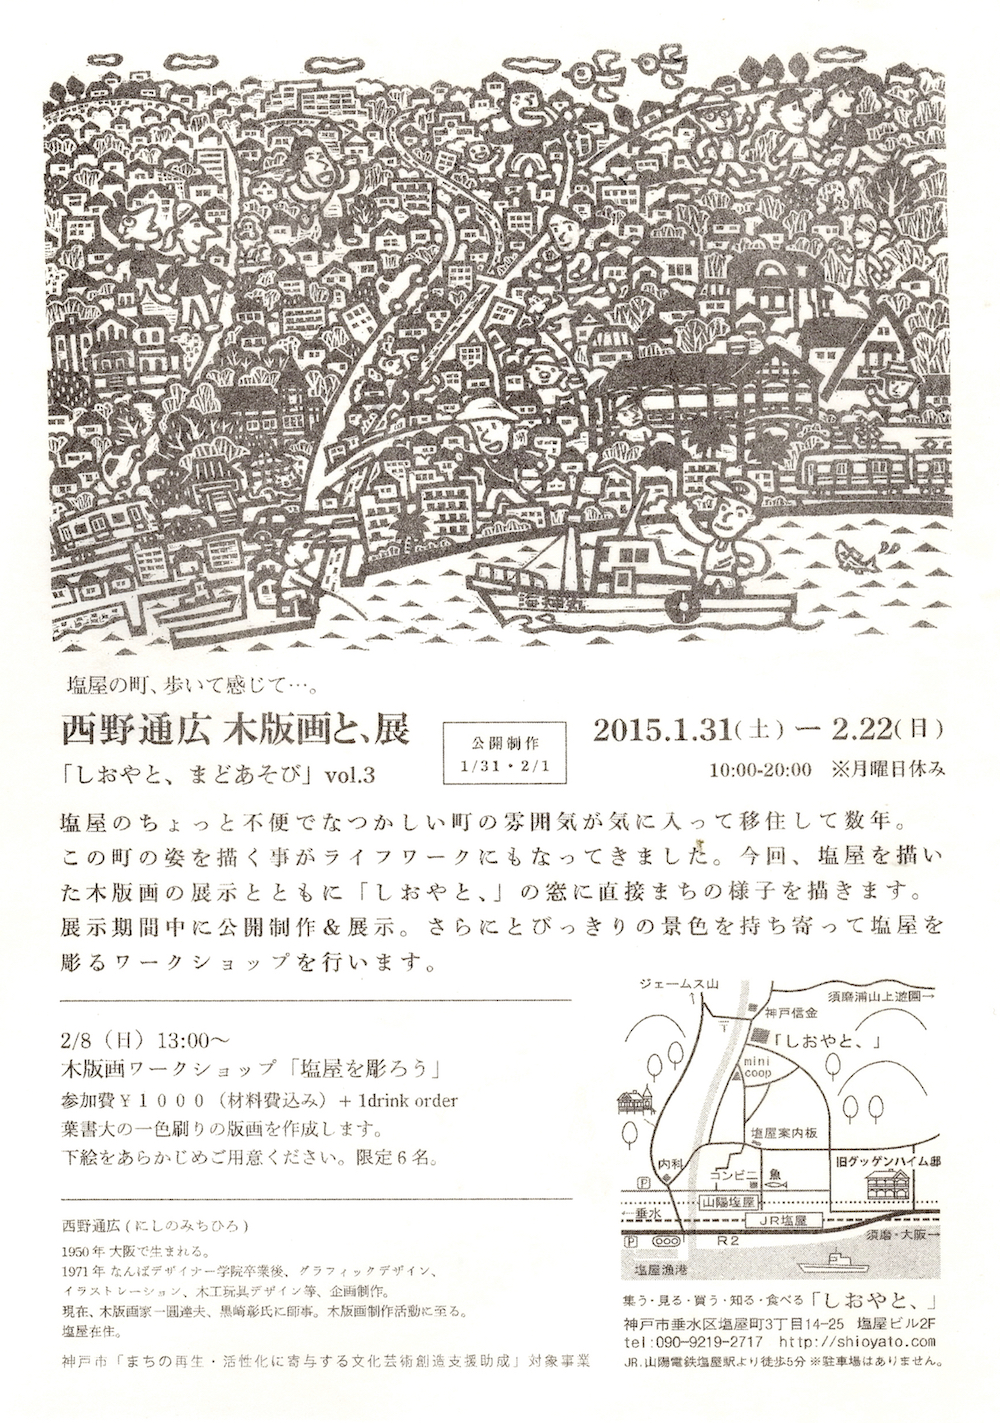 西野通広『木版画と、』  (2015.1.31-2.22 開催)